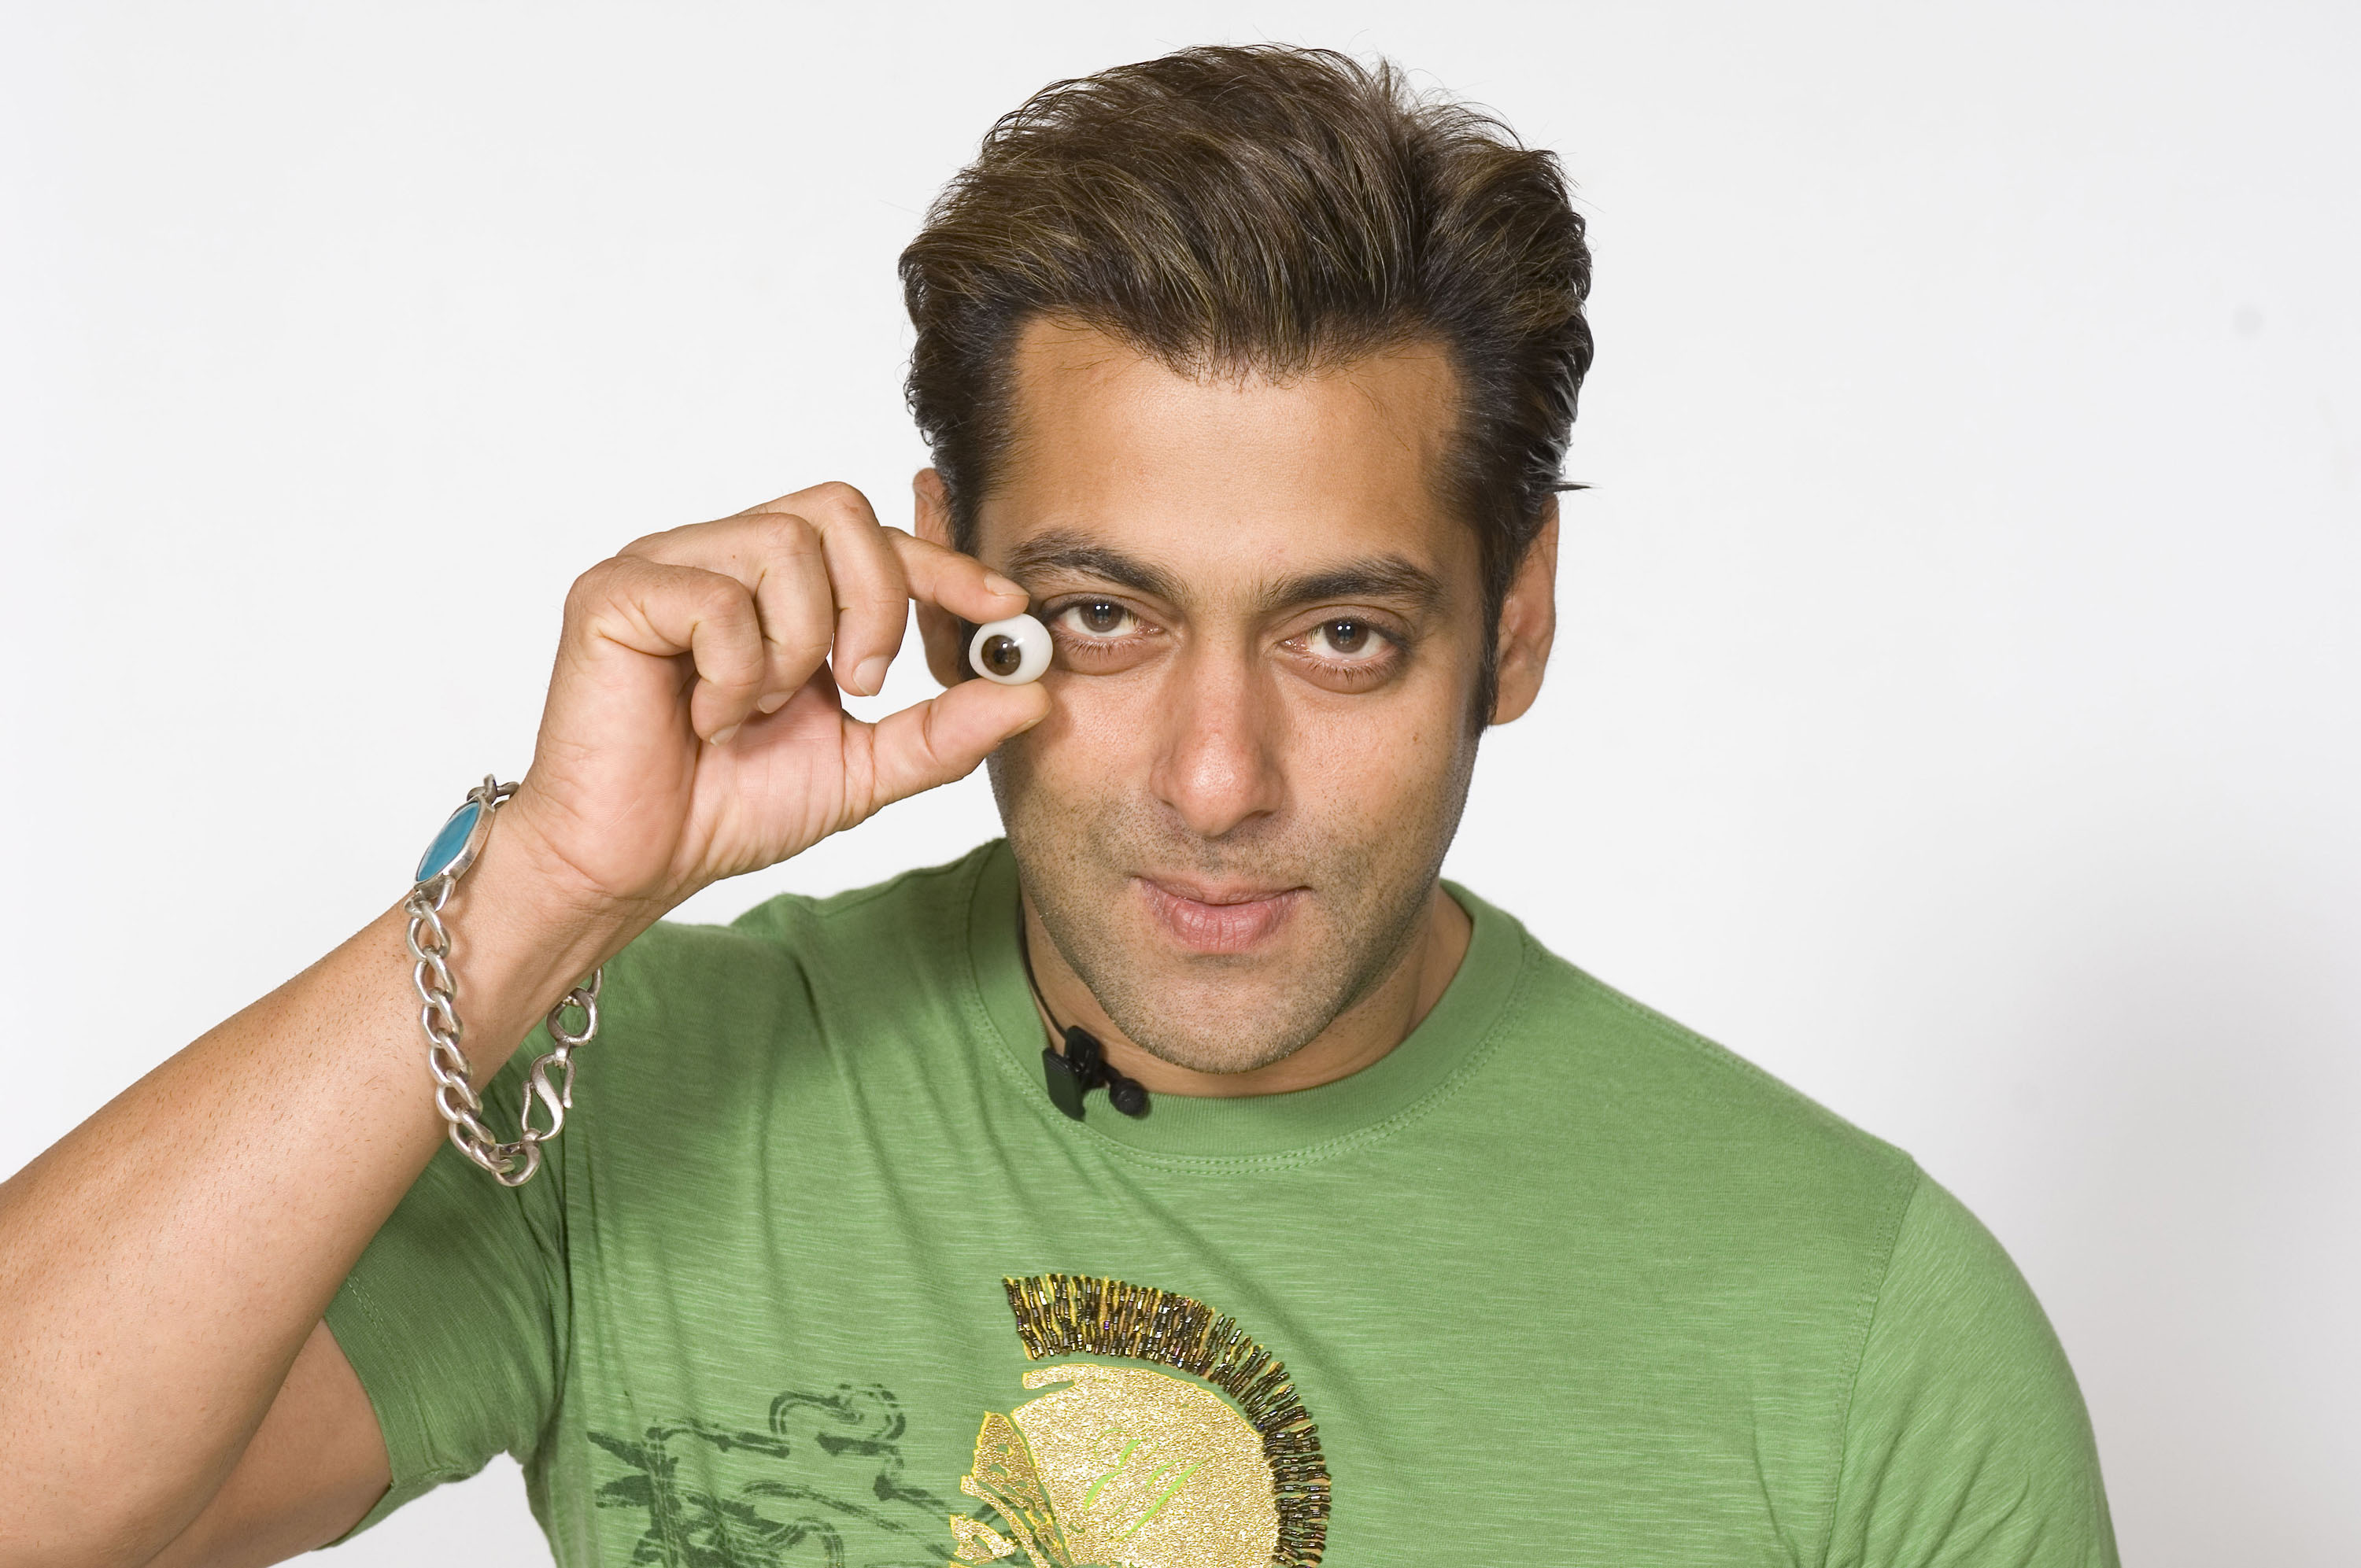 Salman Khan Green T Shirt wallpaper Wallpaper, HD Celebrities 4K Wallpapers,  Images, Photos and Background - Wallpapers Den